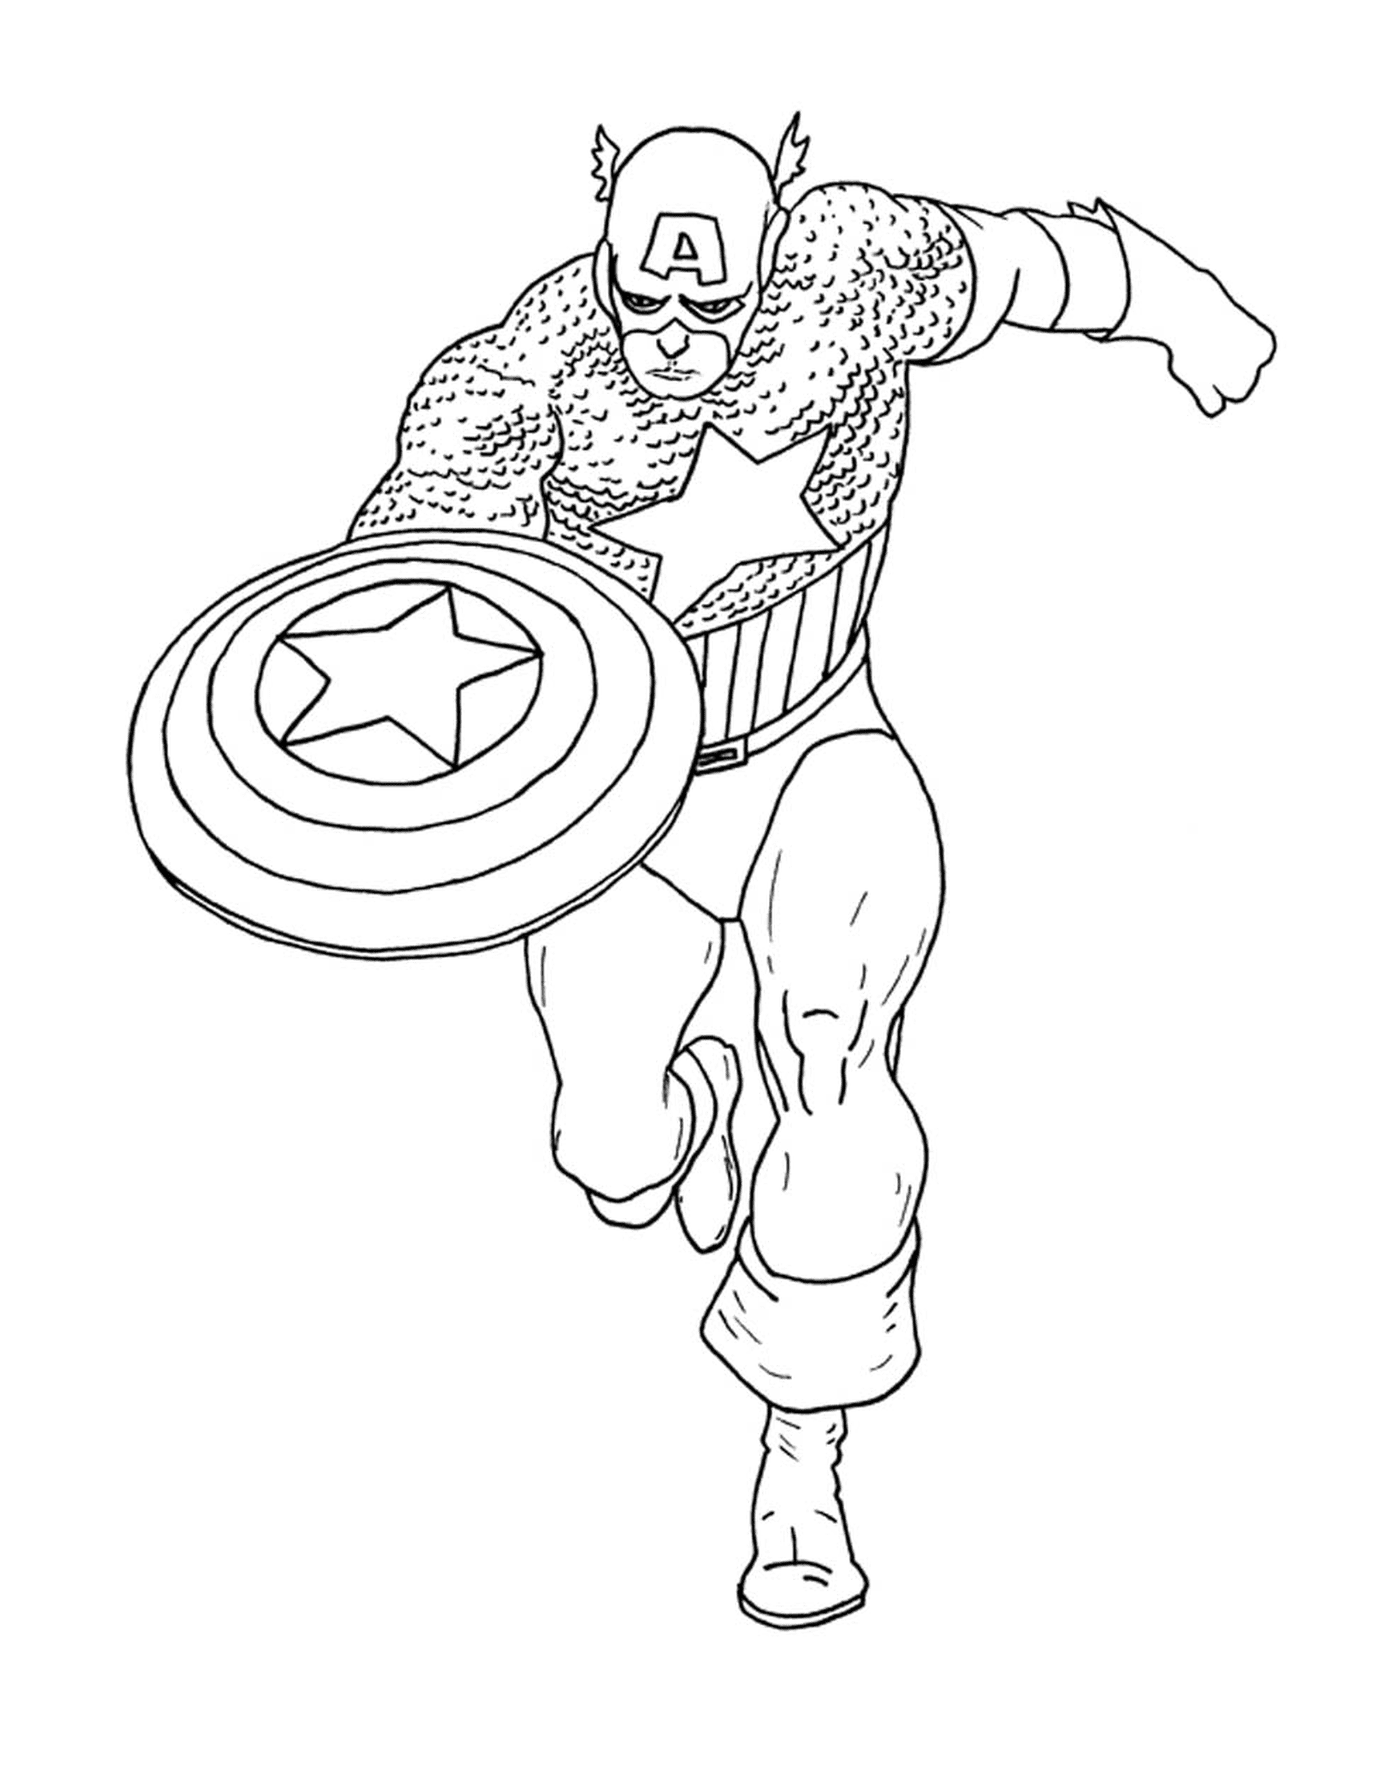  Imagen de un héroe, Capitán América coloreado 